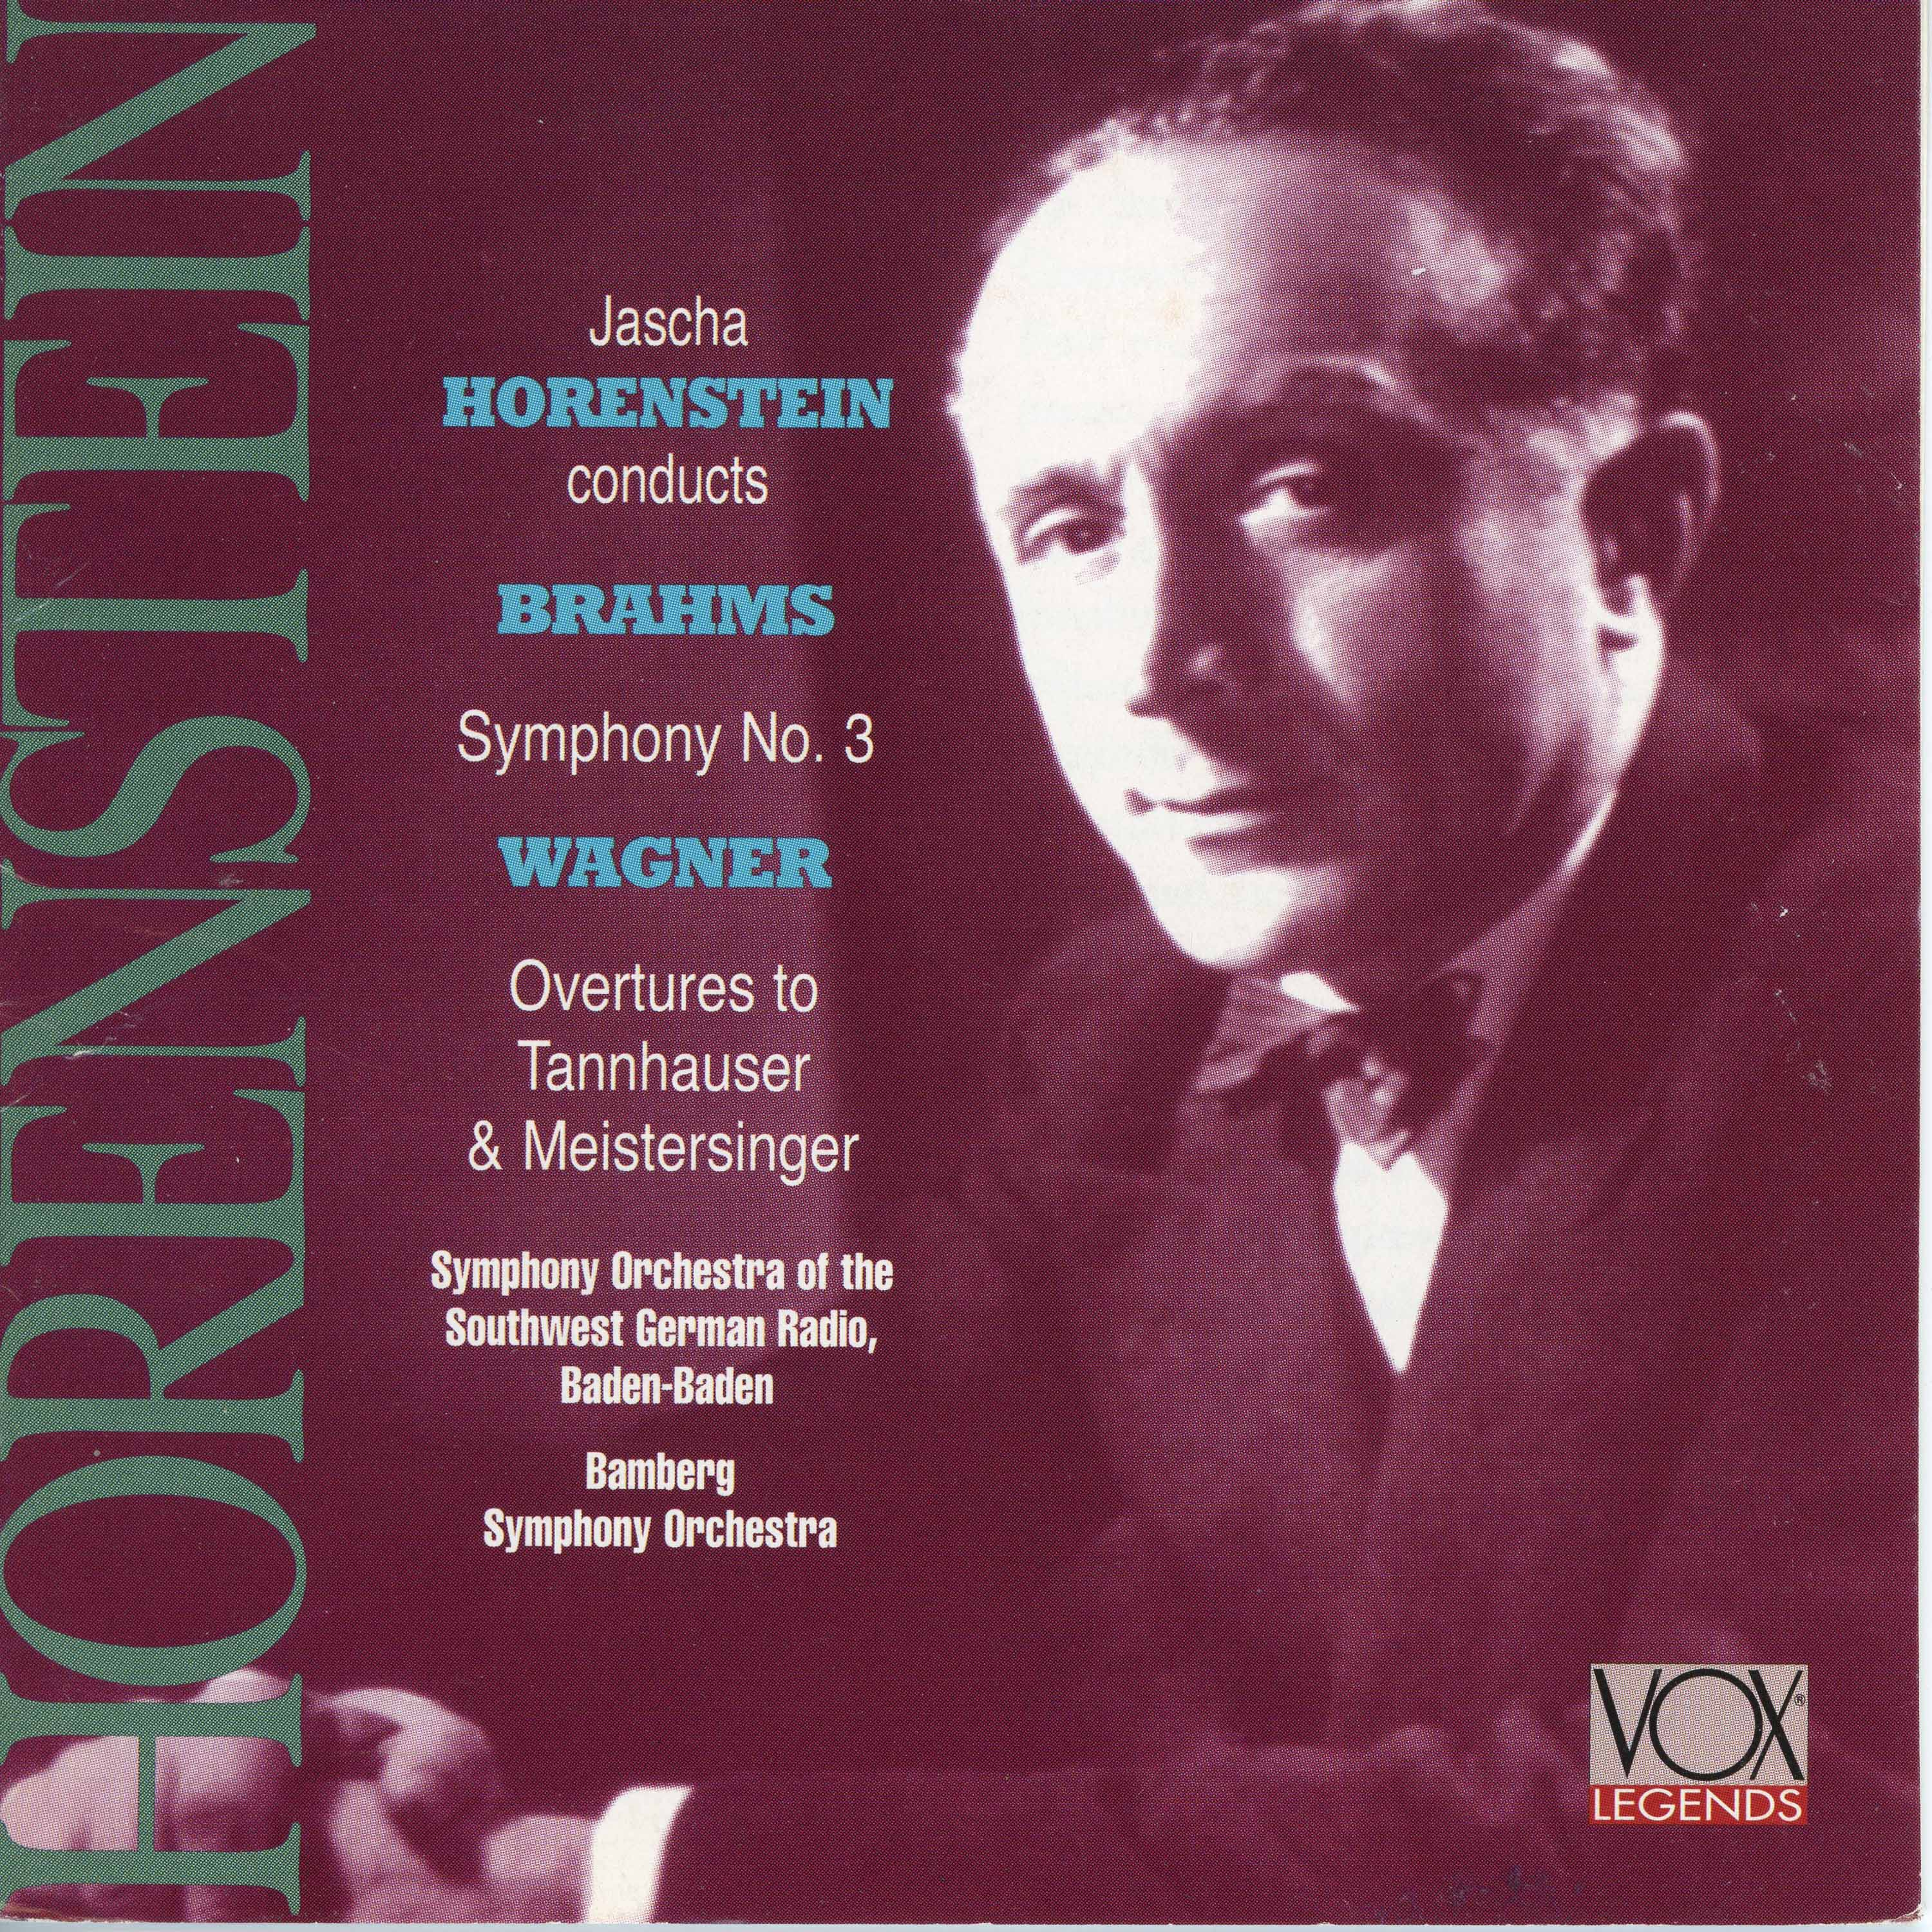 Brahms: Symphony No. 3 in F Major - Wagner: Overtures